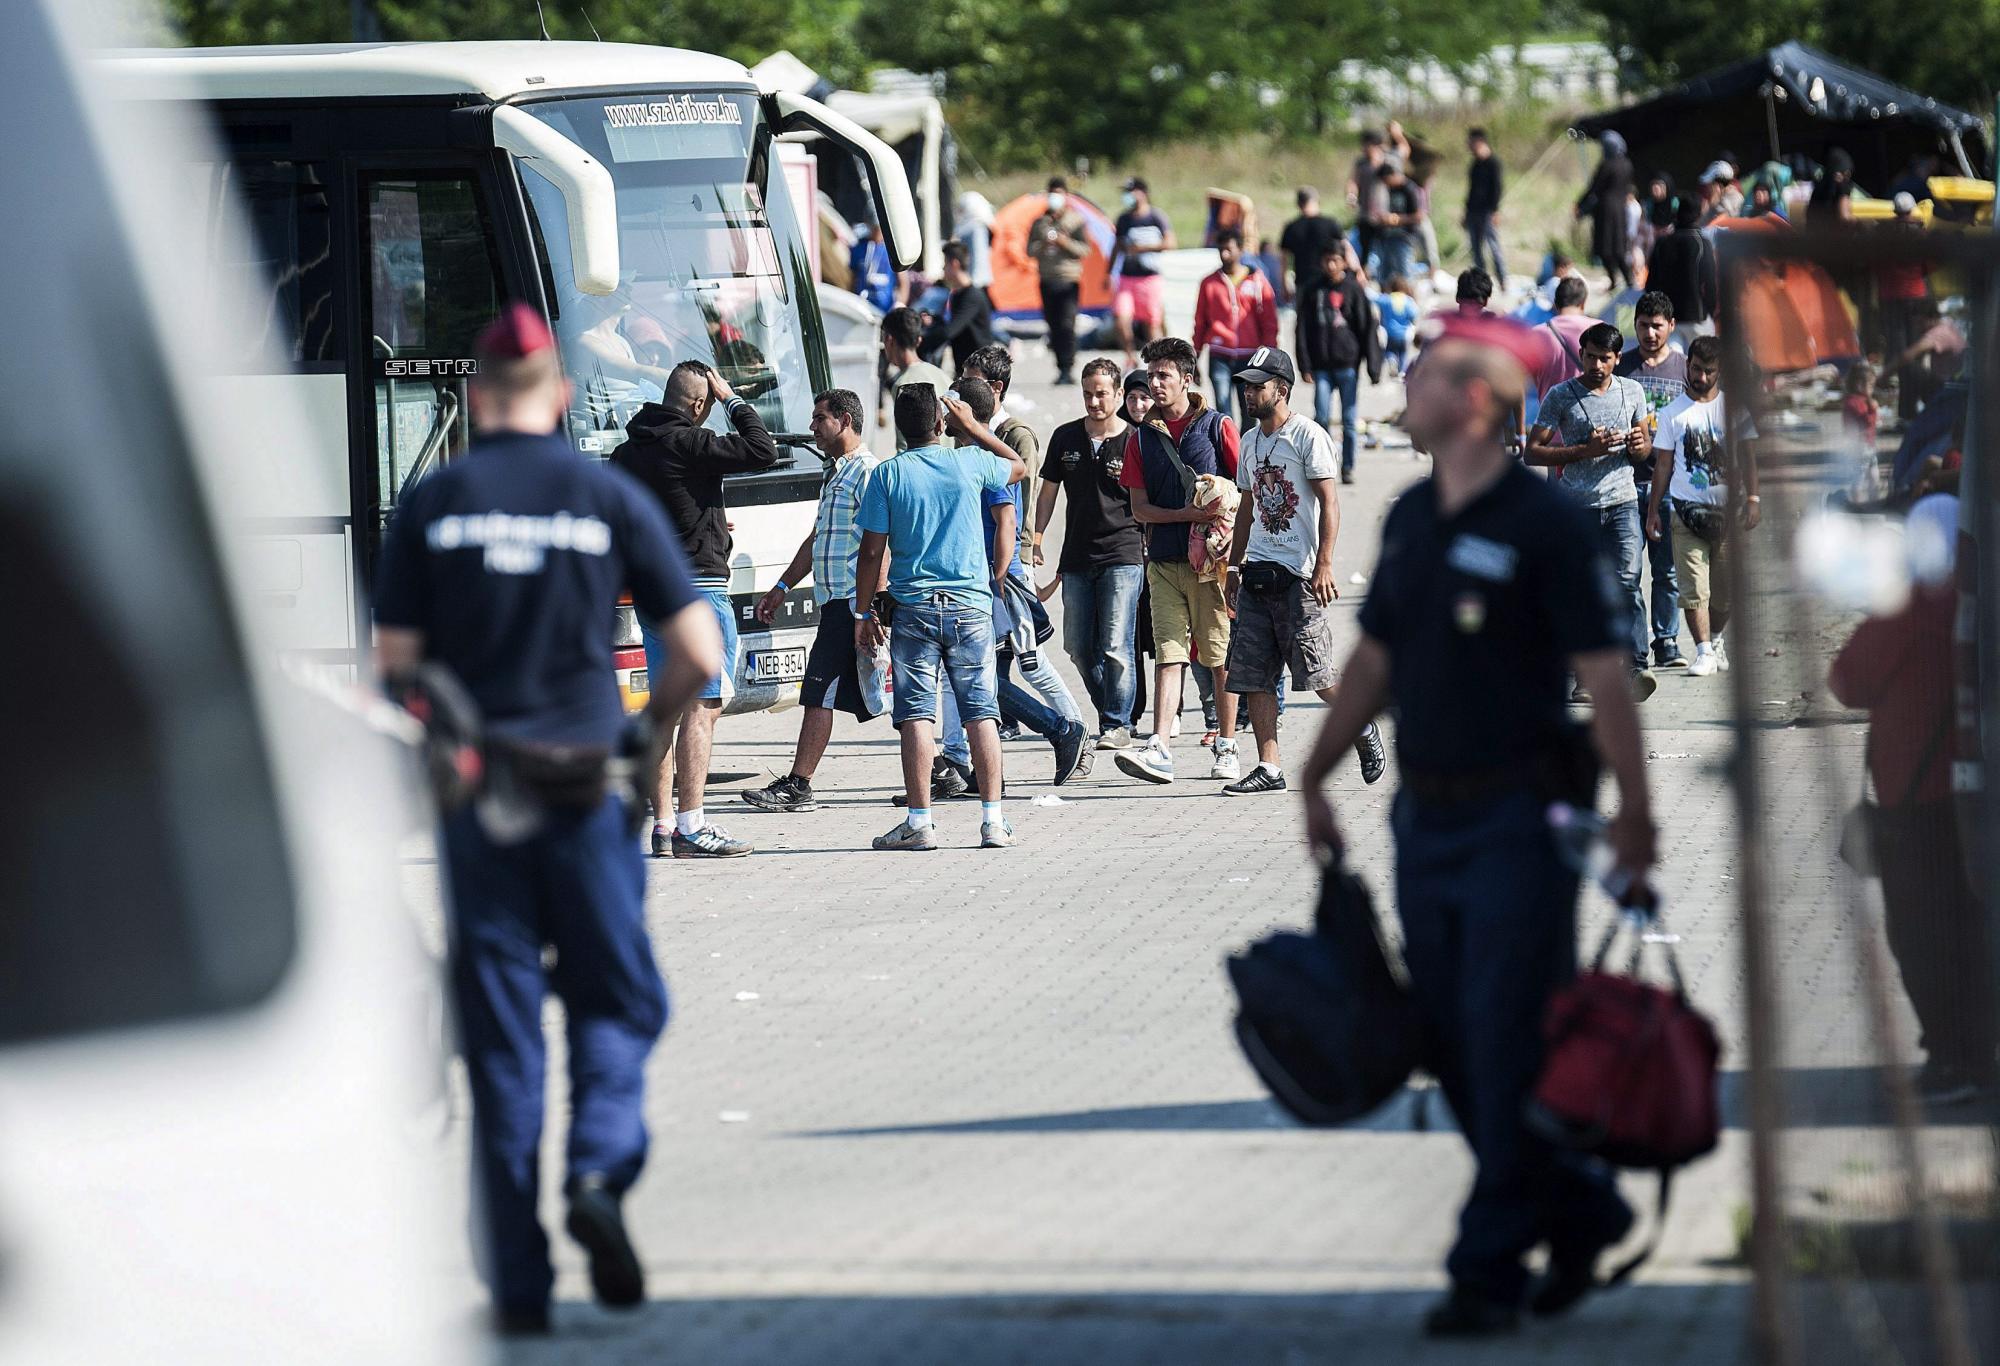 La Policía húngara interceptó el miércoles a 3.241 personas, entre ellos 700 menores, tras cruzar la frontera de manera ilegal desde Serbia, un número que supone un récord de entradas en el país en un solo día, informaron las fuerzas de seguridad.